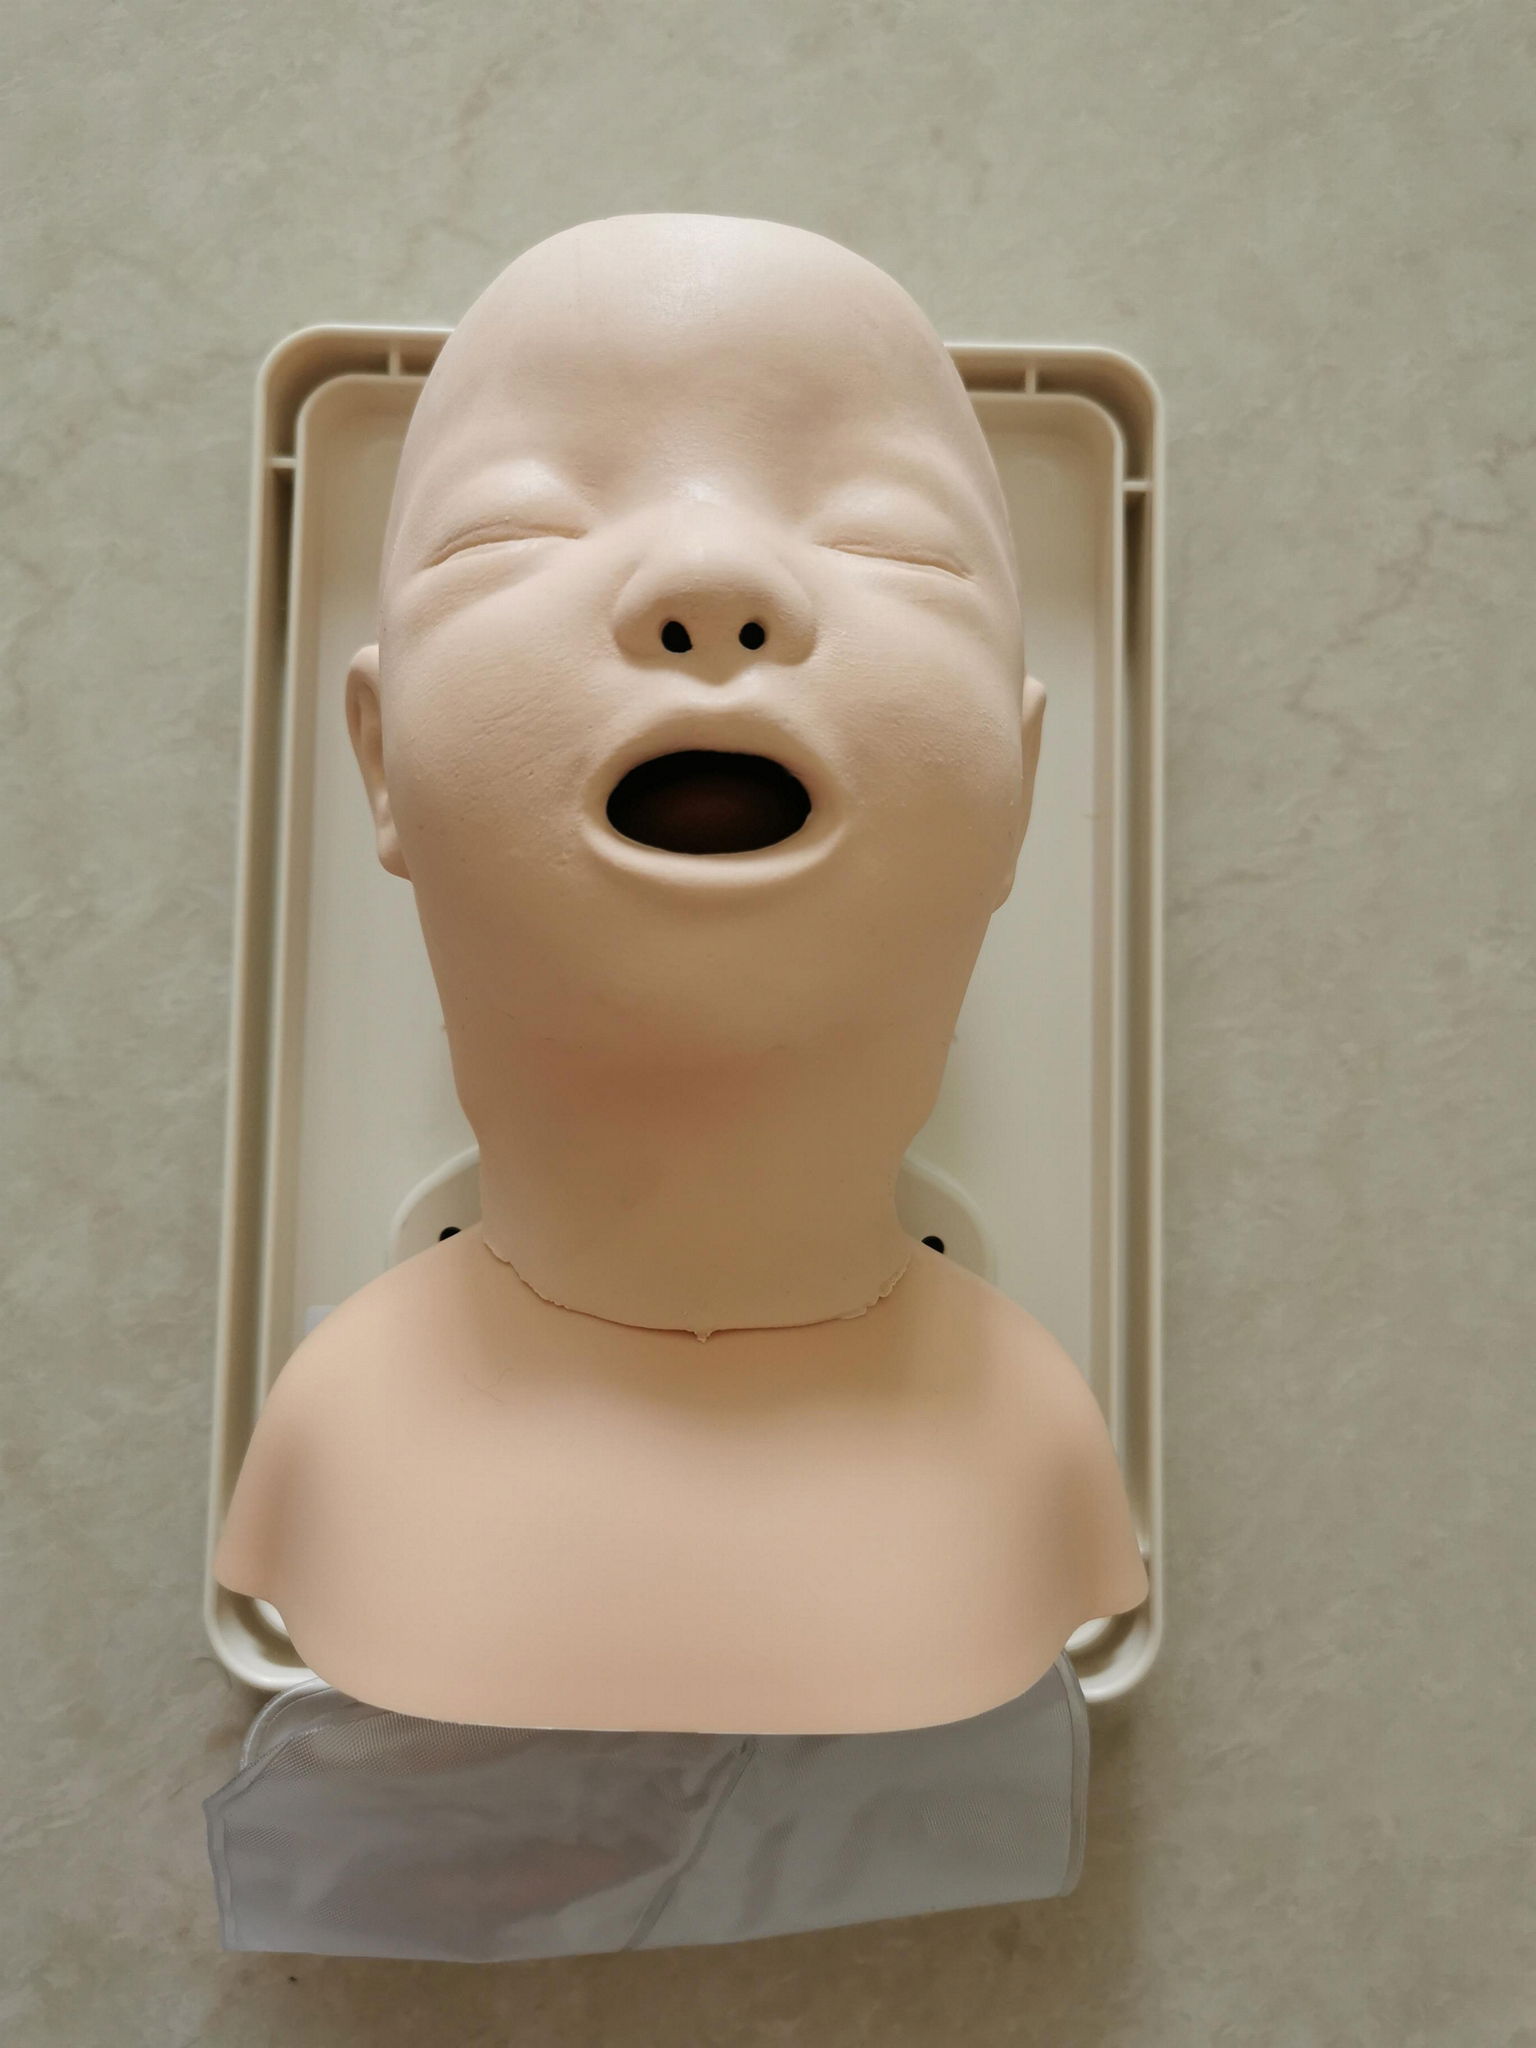 挪度嬰儿氣管插管訓練模型250-00250，小儿氣道管理模型 3